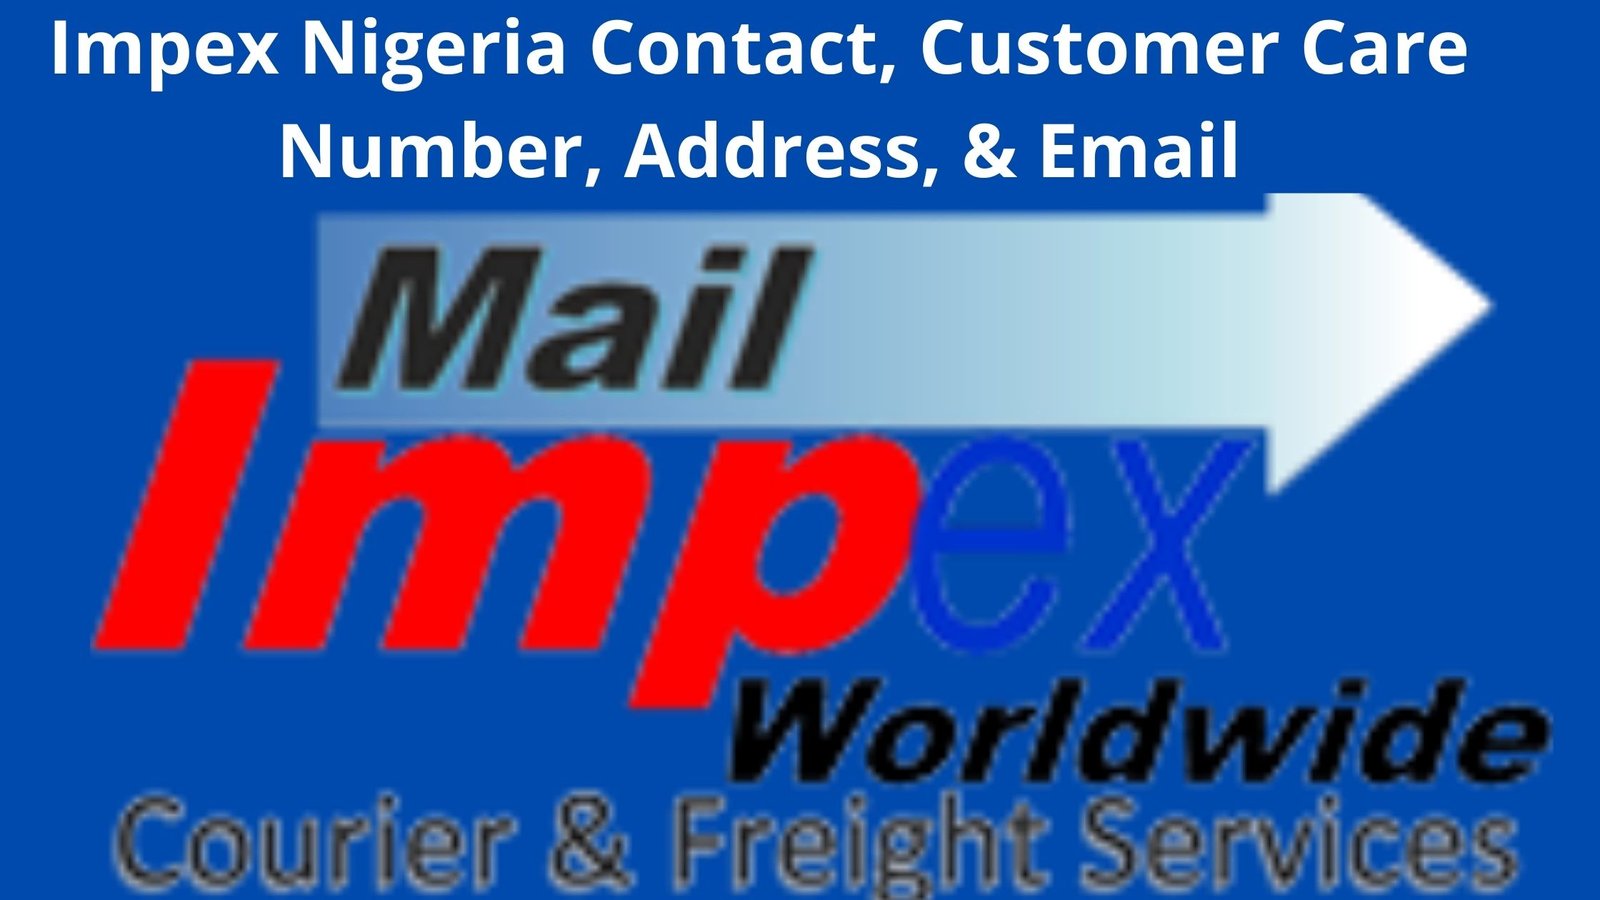 Impex Nigeria Contact